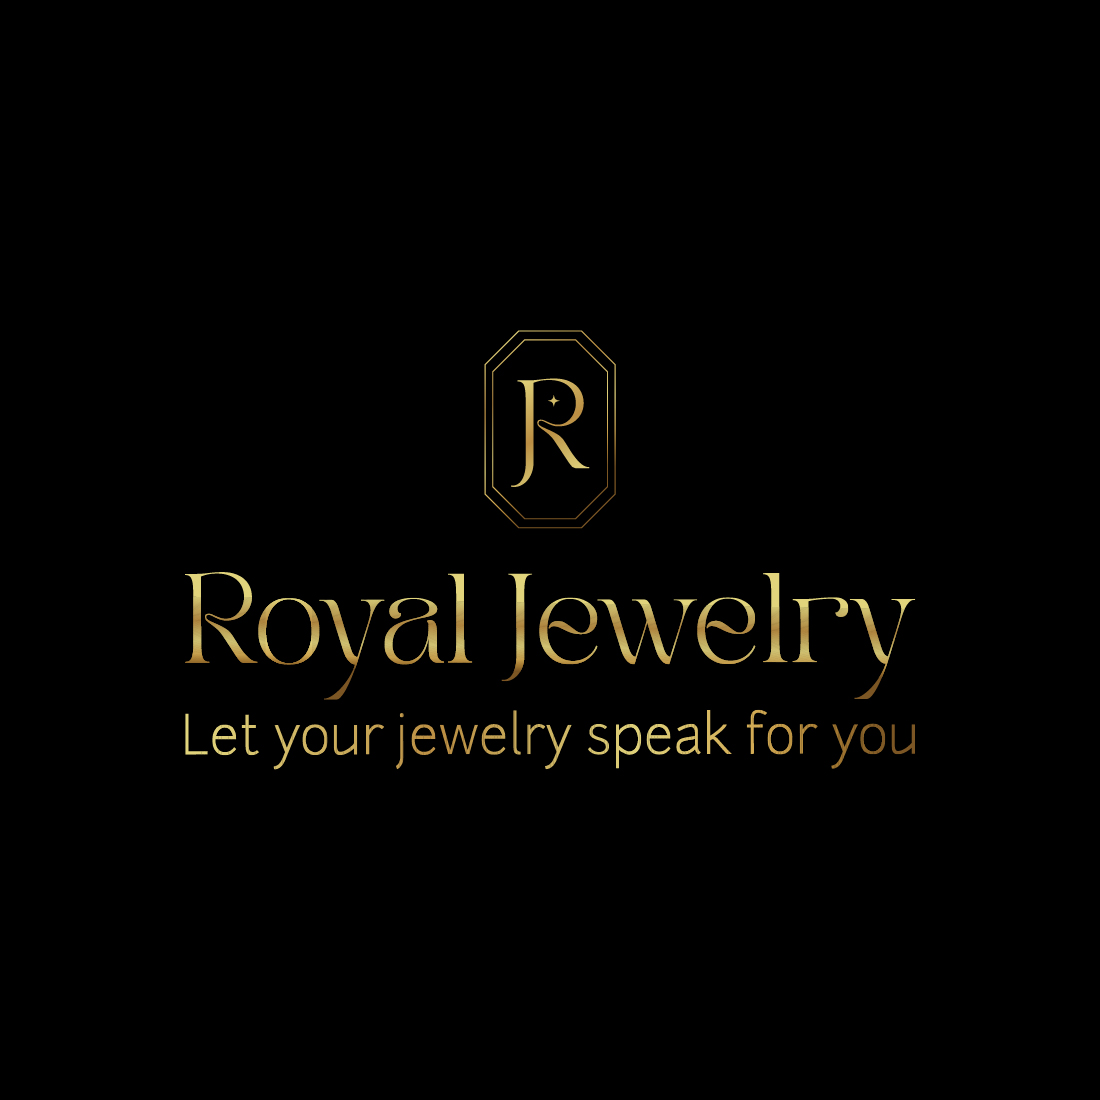 R logo, Jewelry logo, Royal Jewelry logo preview image.